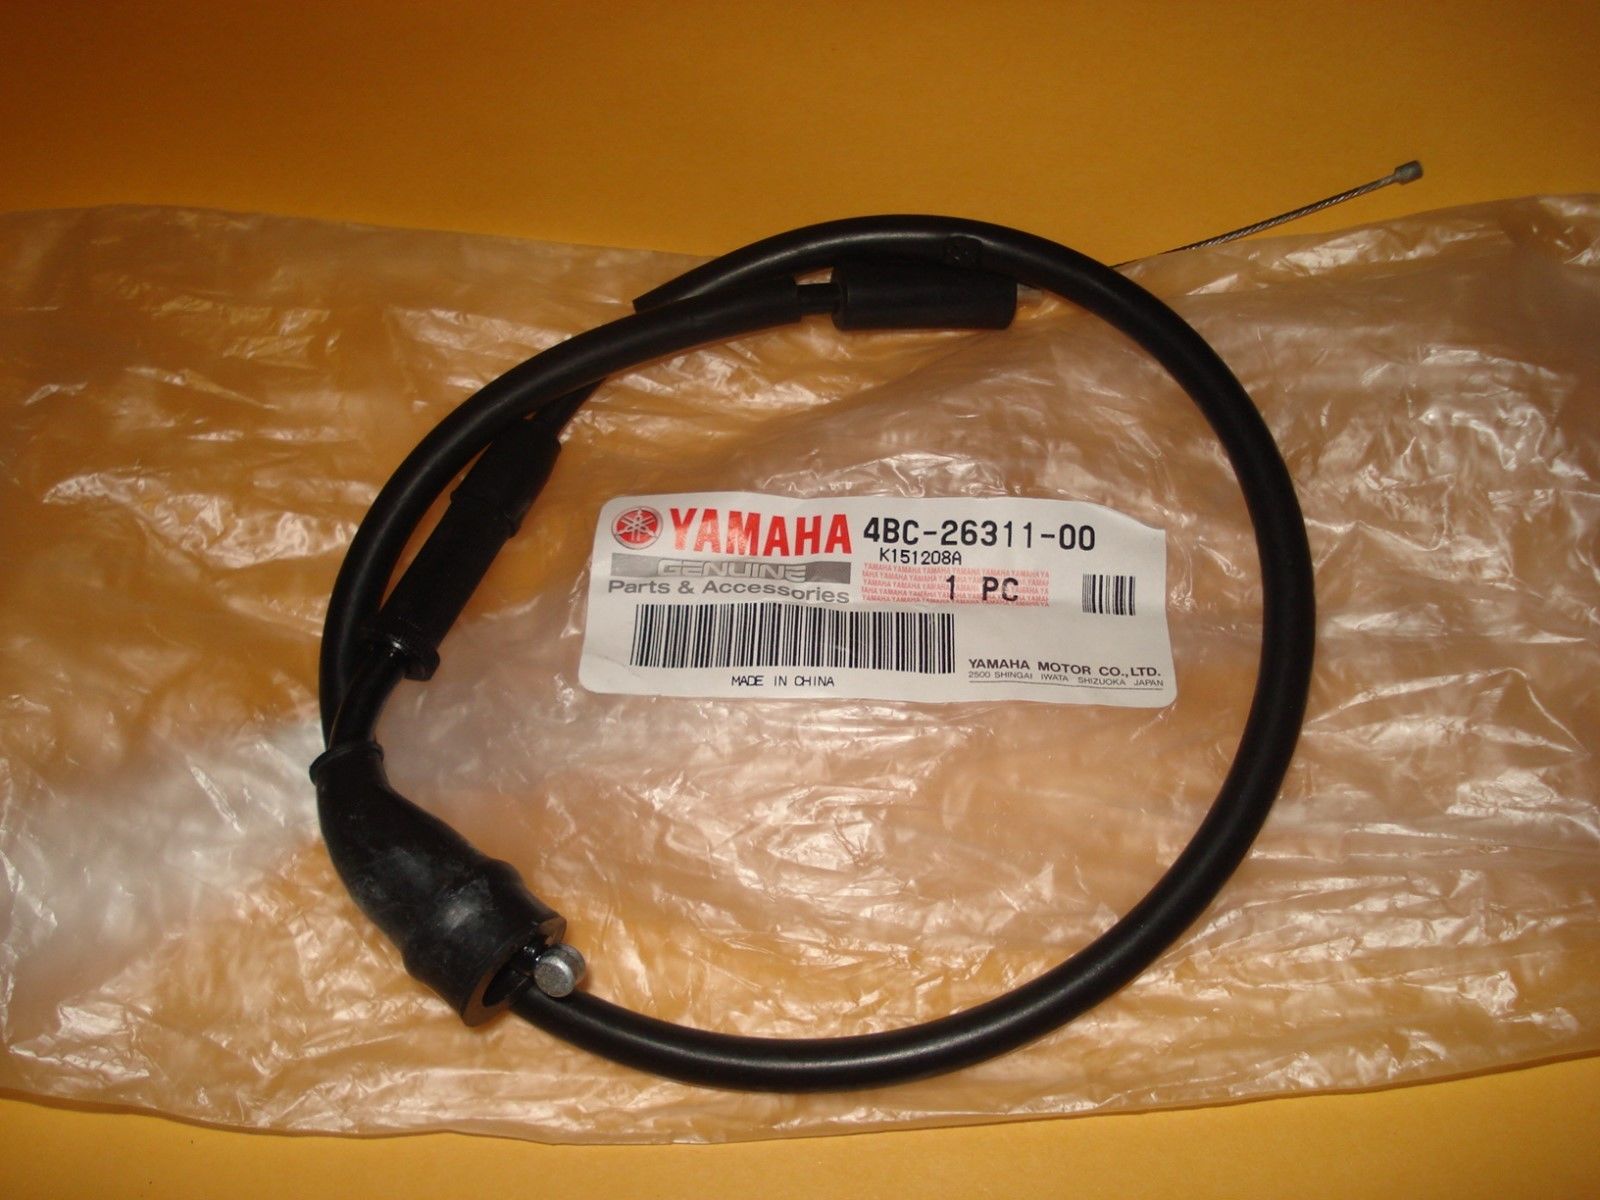 Yamaha PW80 PW 80 throttle cable OEM